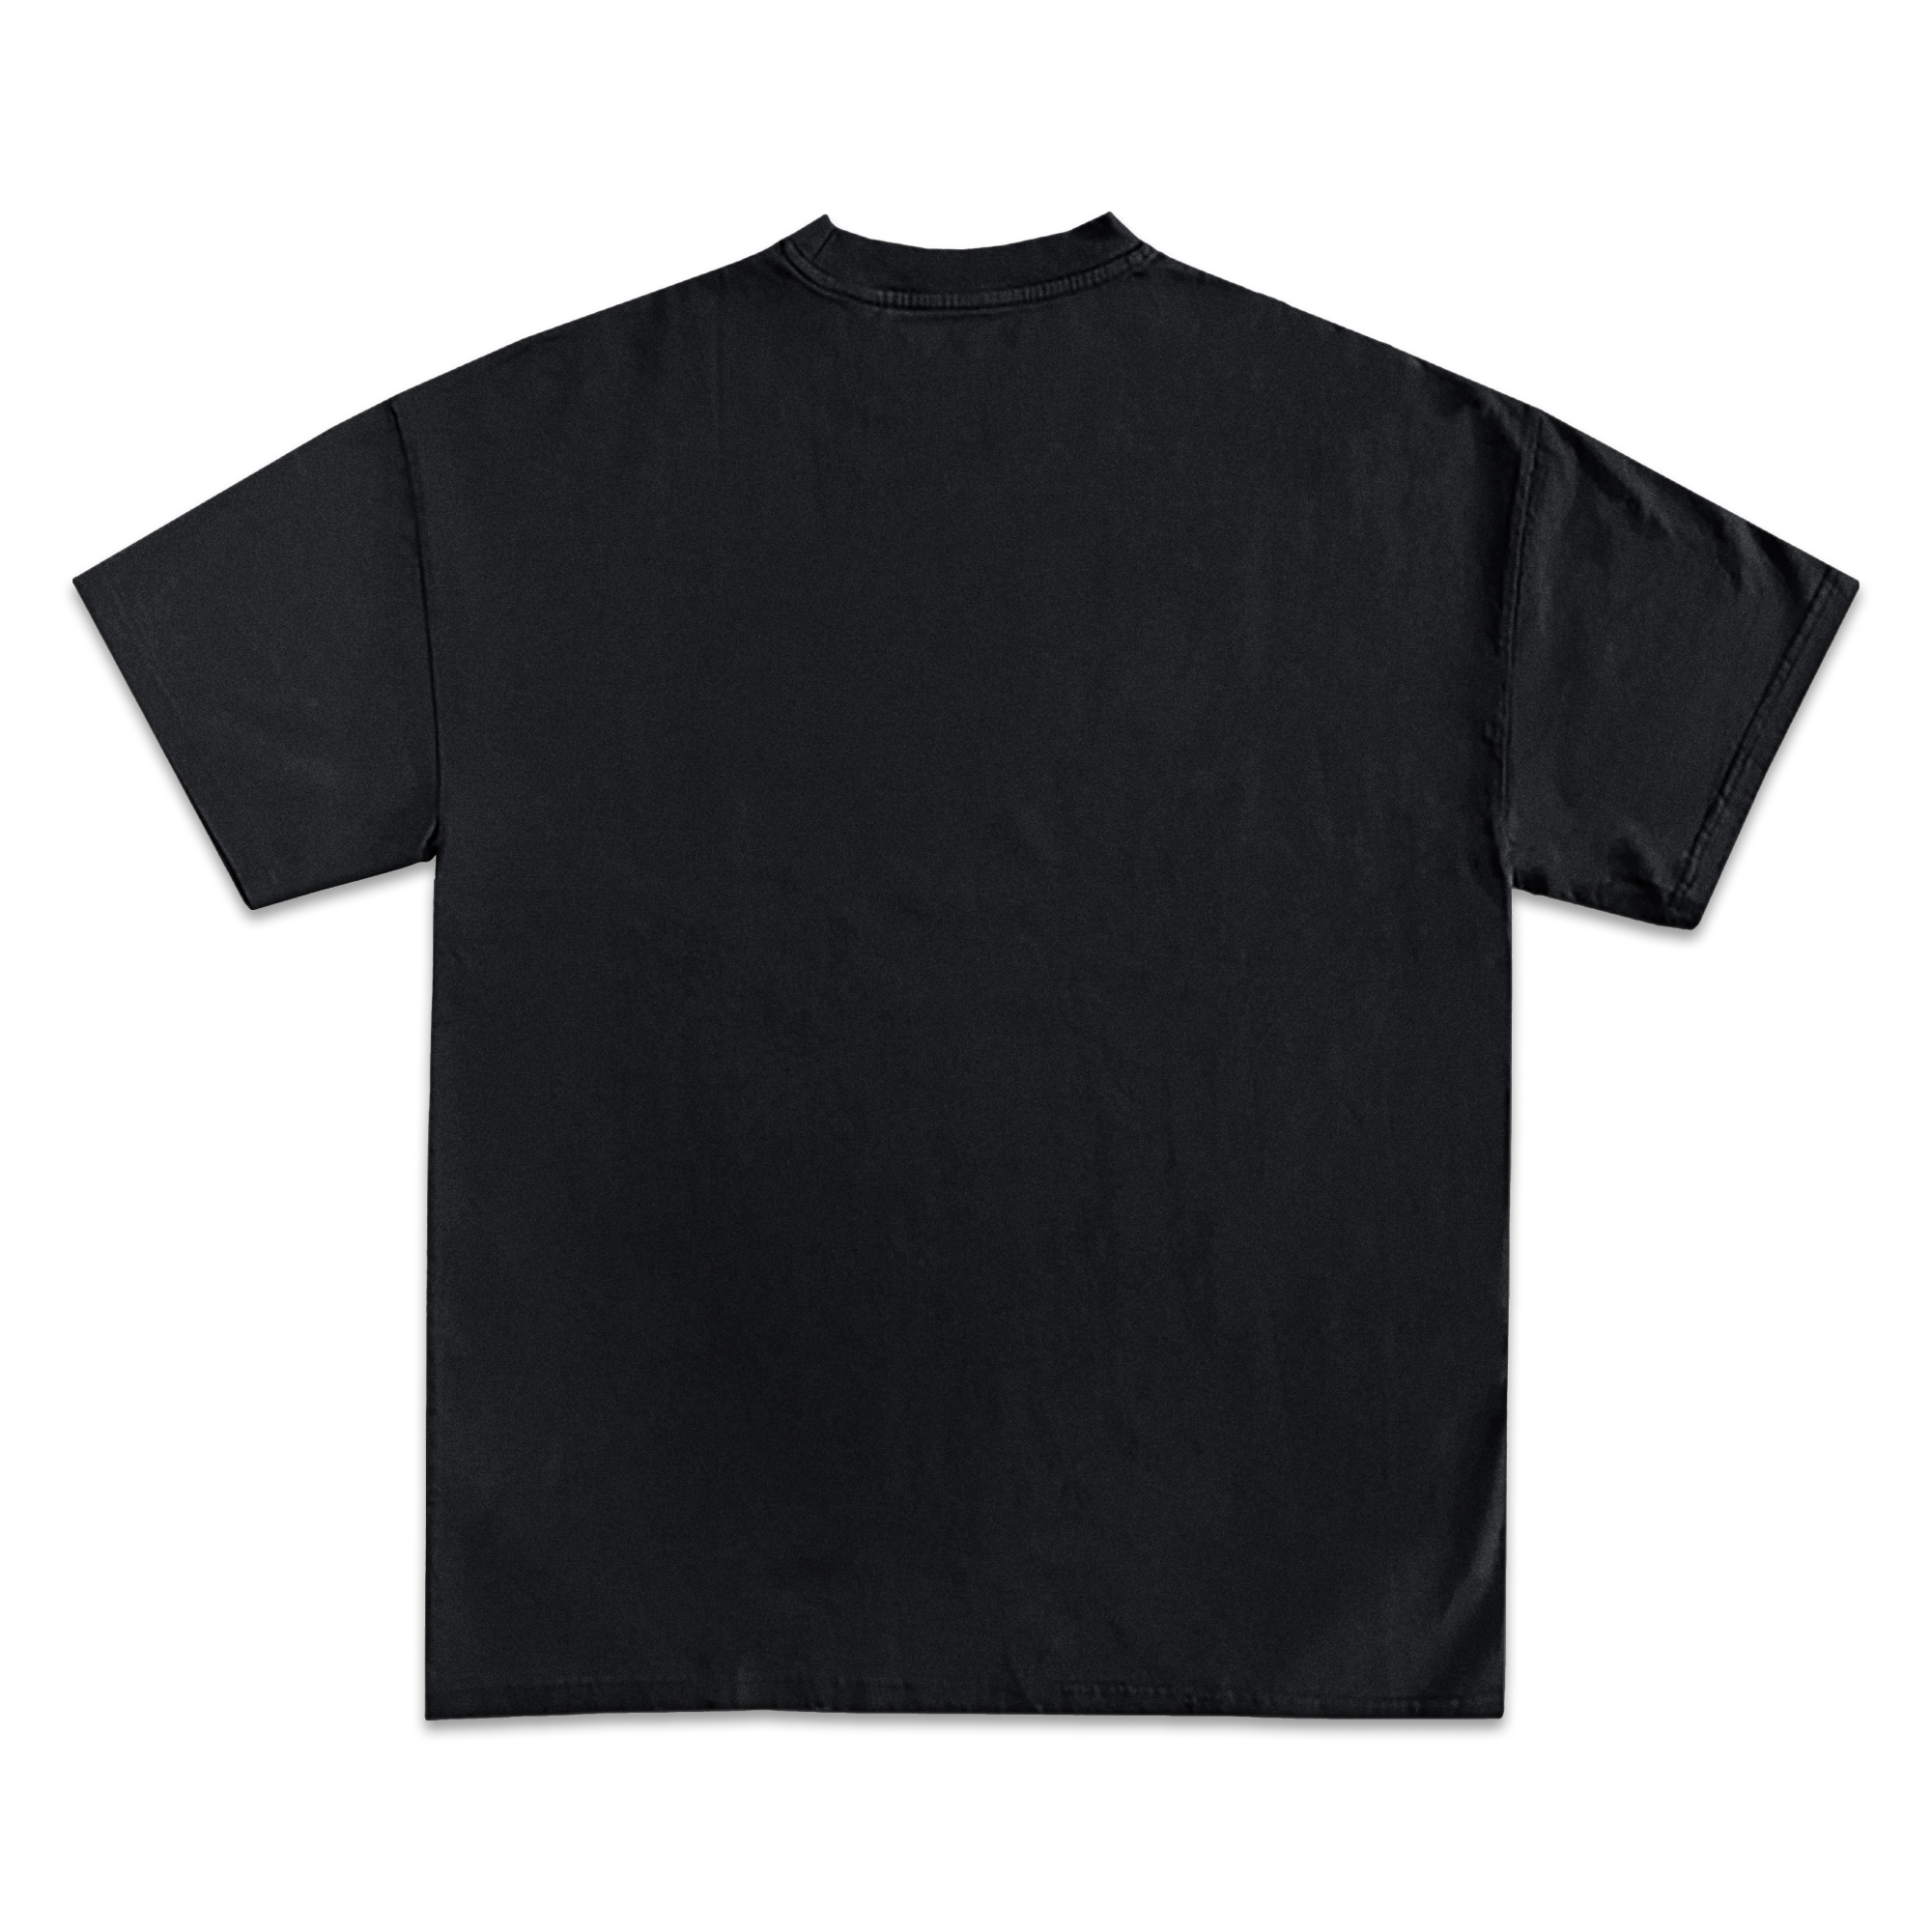 Tony Montana Scarface Jumbo Face T-Shirt